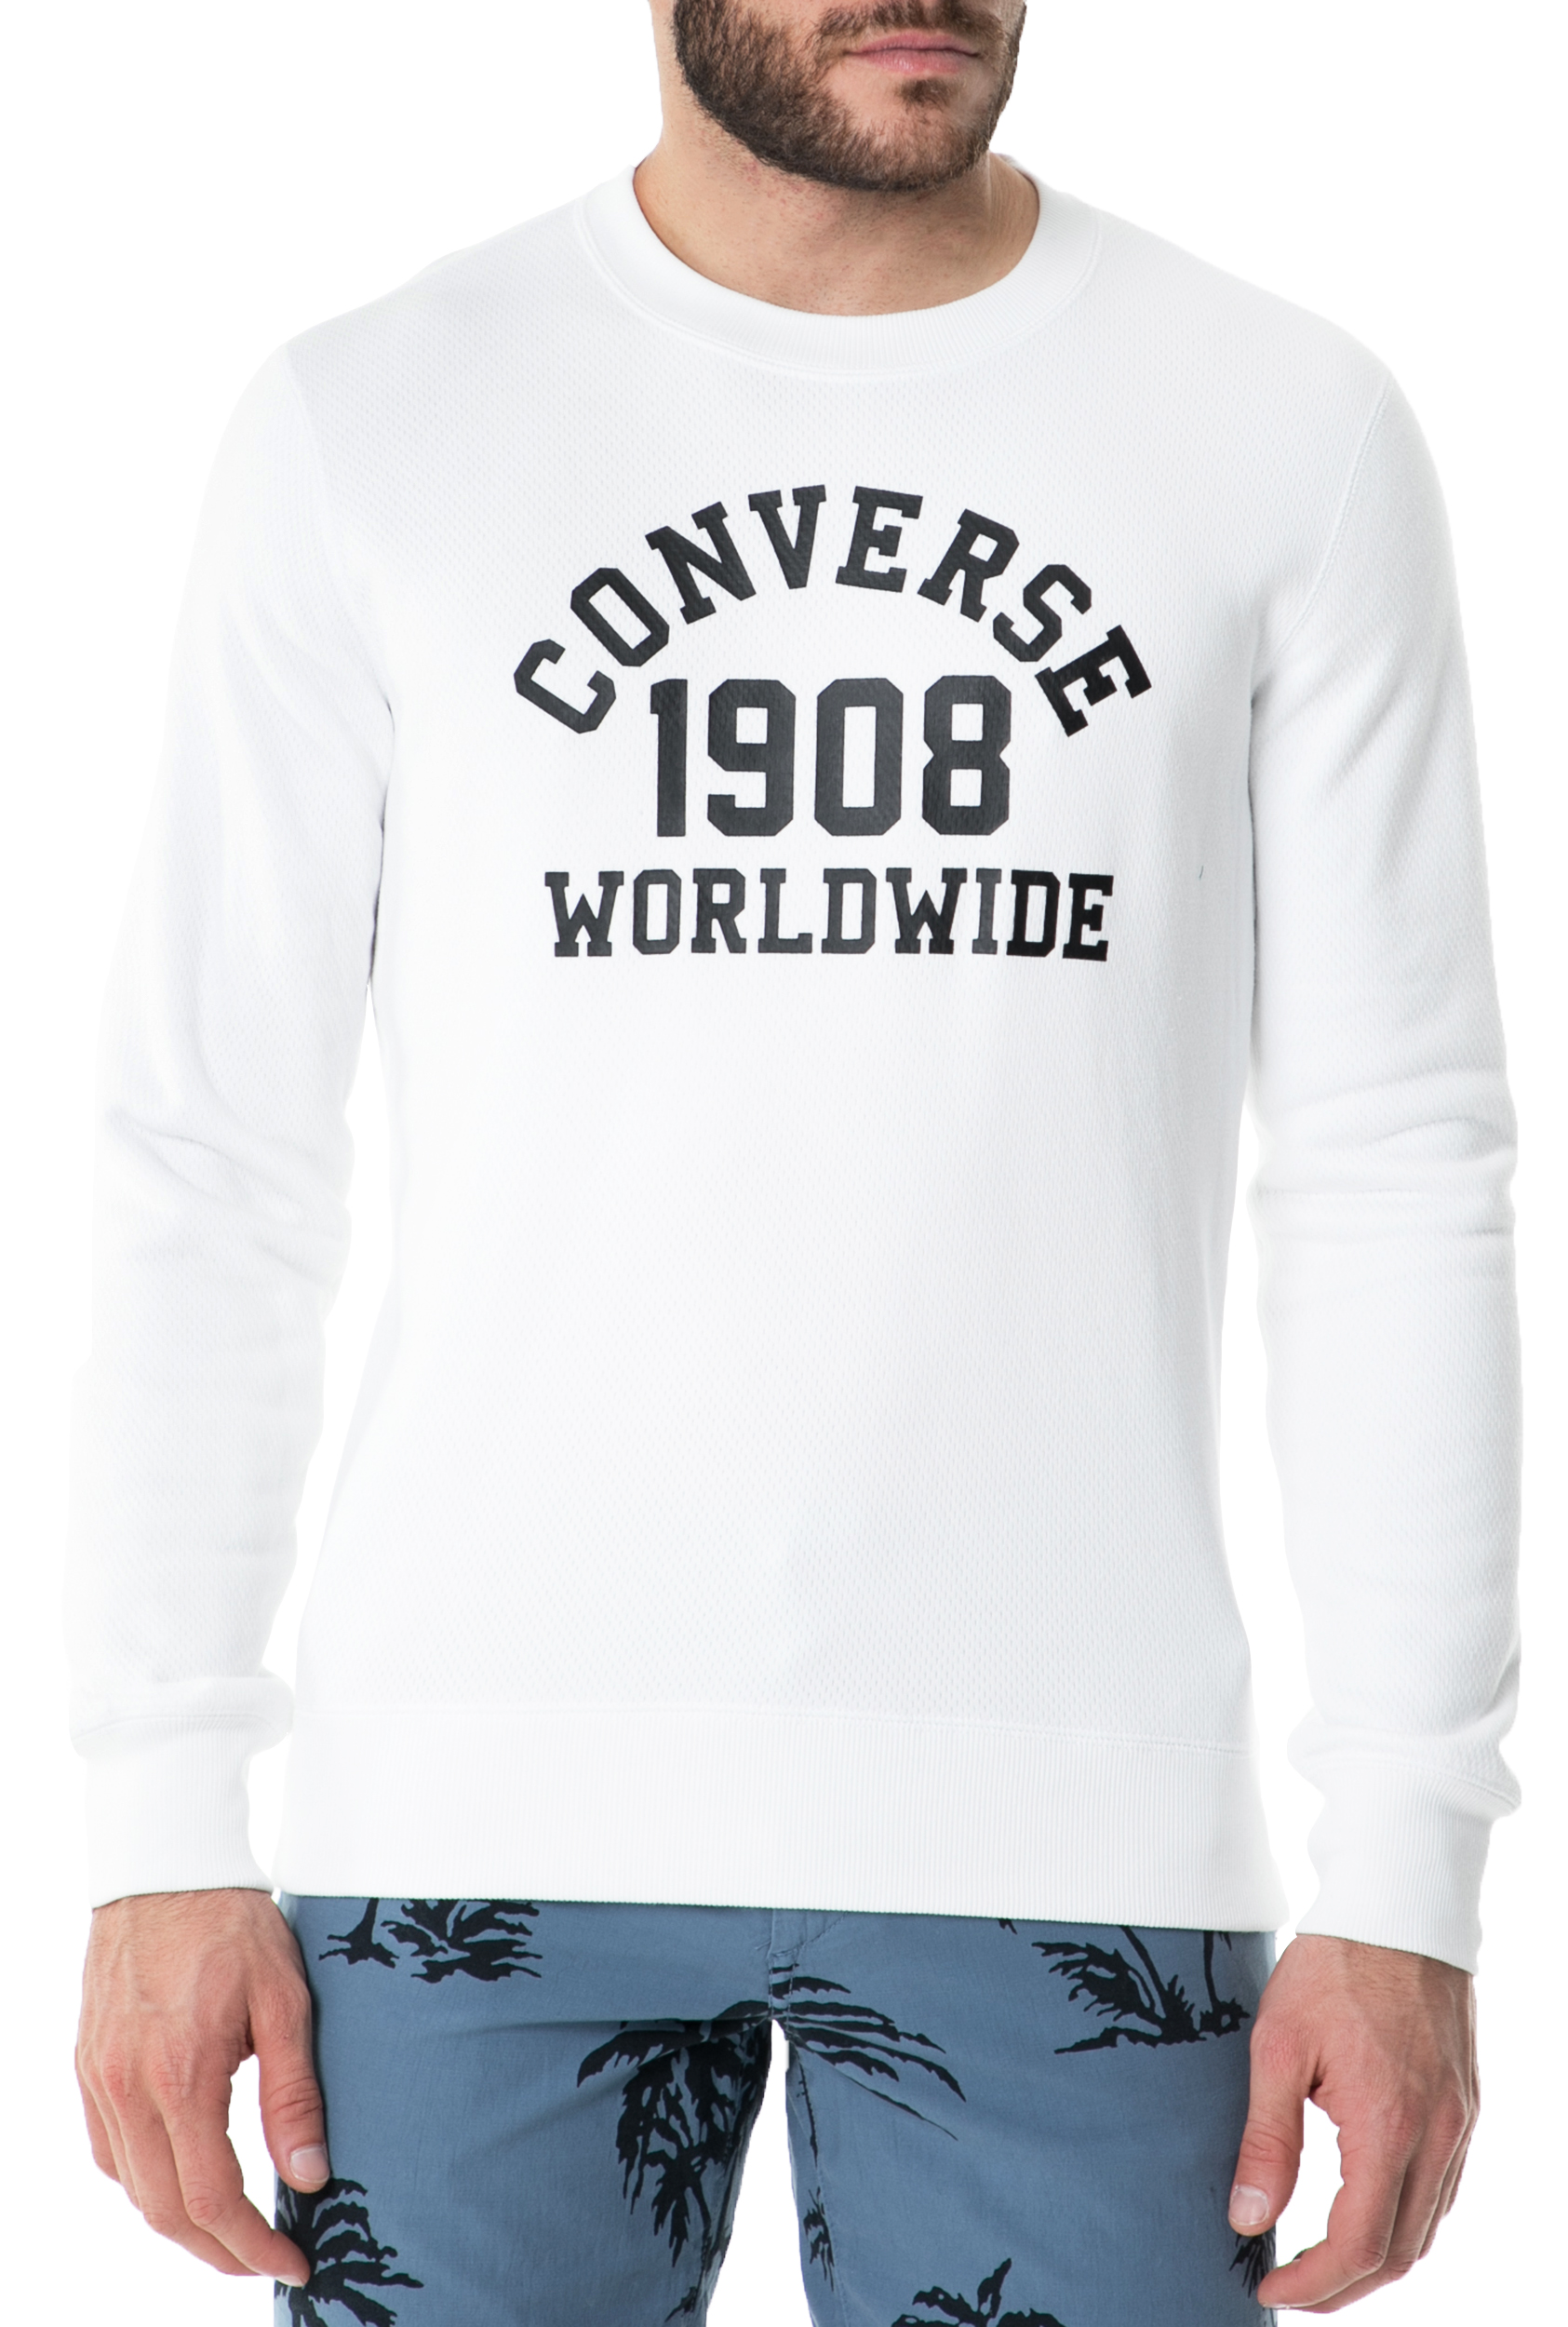 Ανδρικά/Ρούχα/Φούτερ/Μπλούζες CONVERSE - Ανδρική φούτερ μπλούζα CONVERSE λευκή